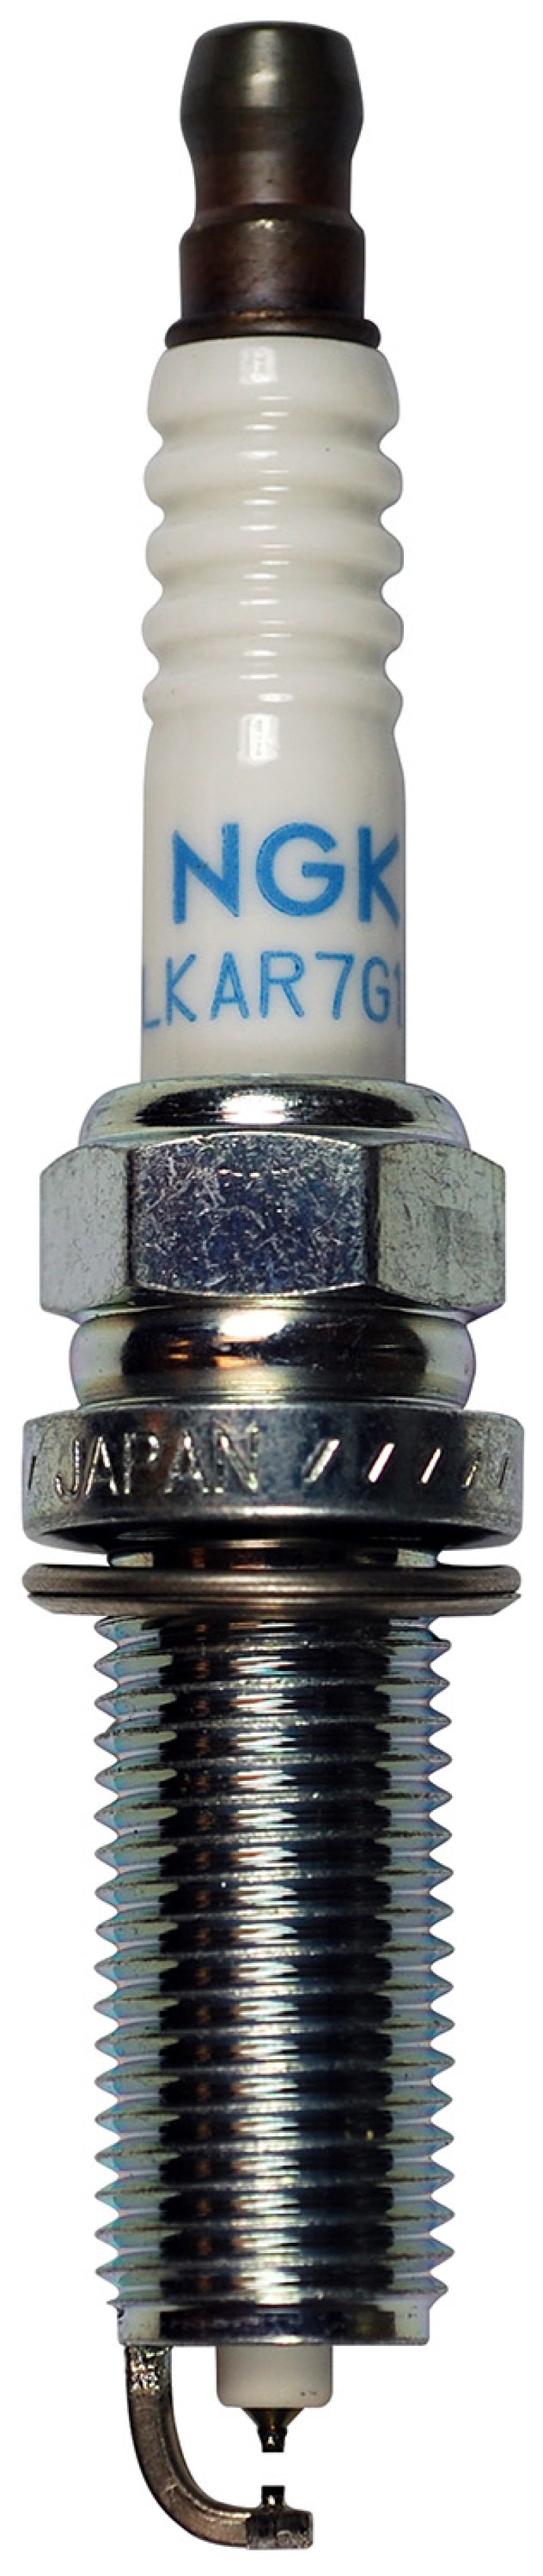 NGK Laser Iridium Spark Plug Box of 4 (DILKAR7H11GS).